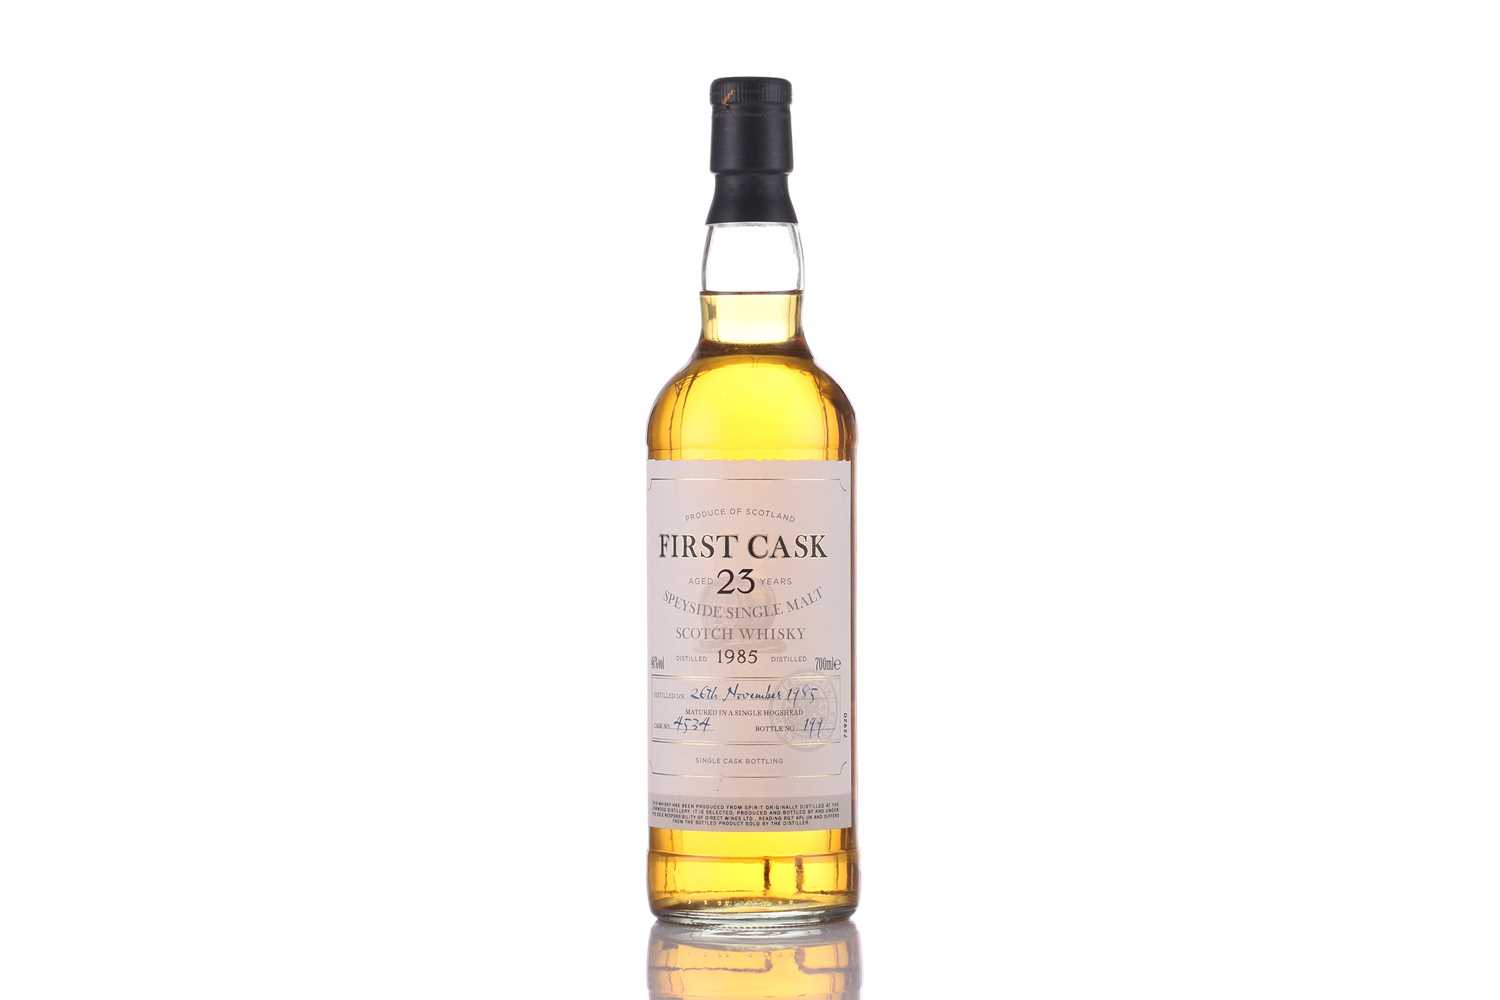 A bottle of First Cask Speyside Single Malt Scotch Whisky, 1989, Cask No. 24379, Bottle No. 403 ( - Image 5 of 7